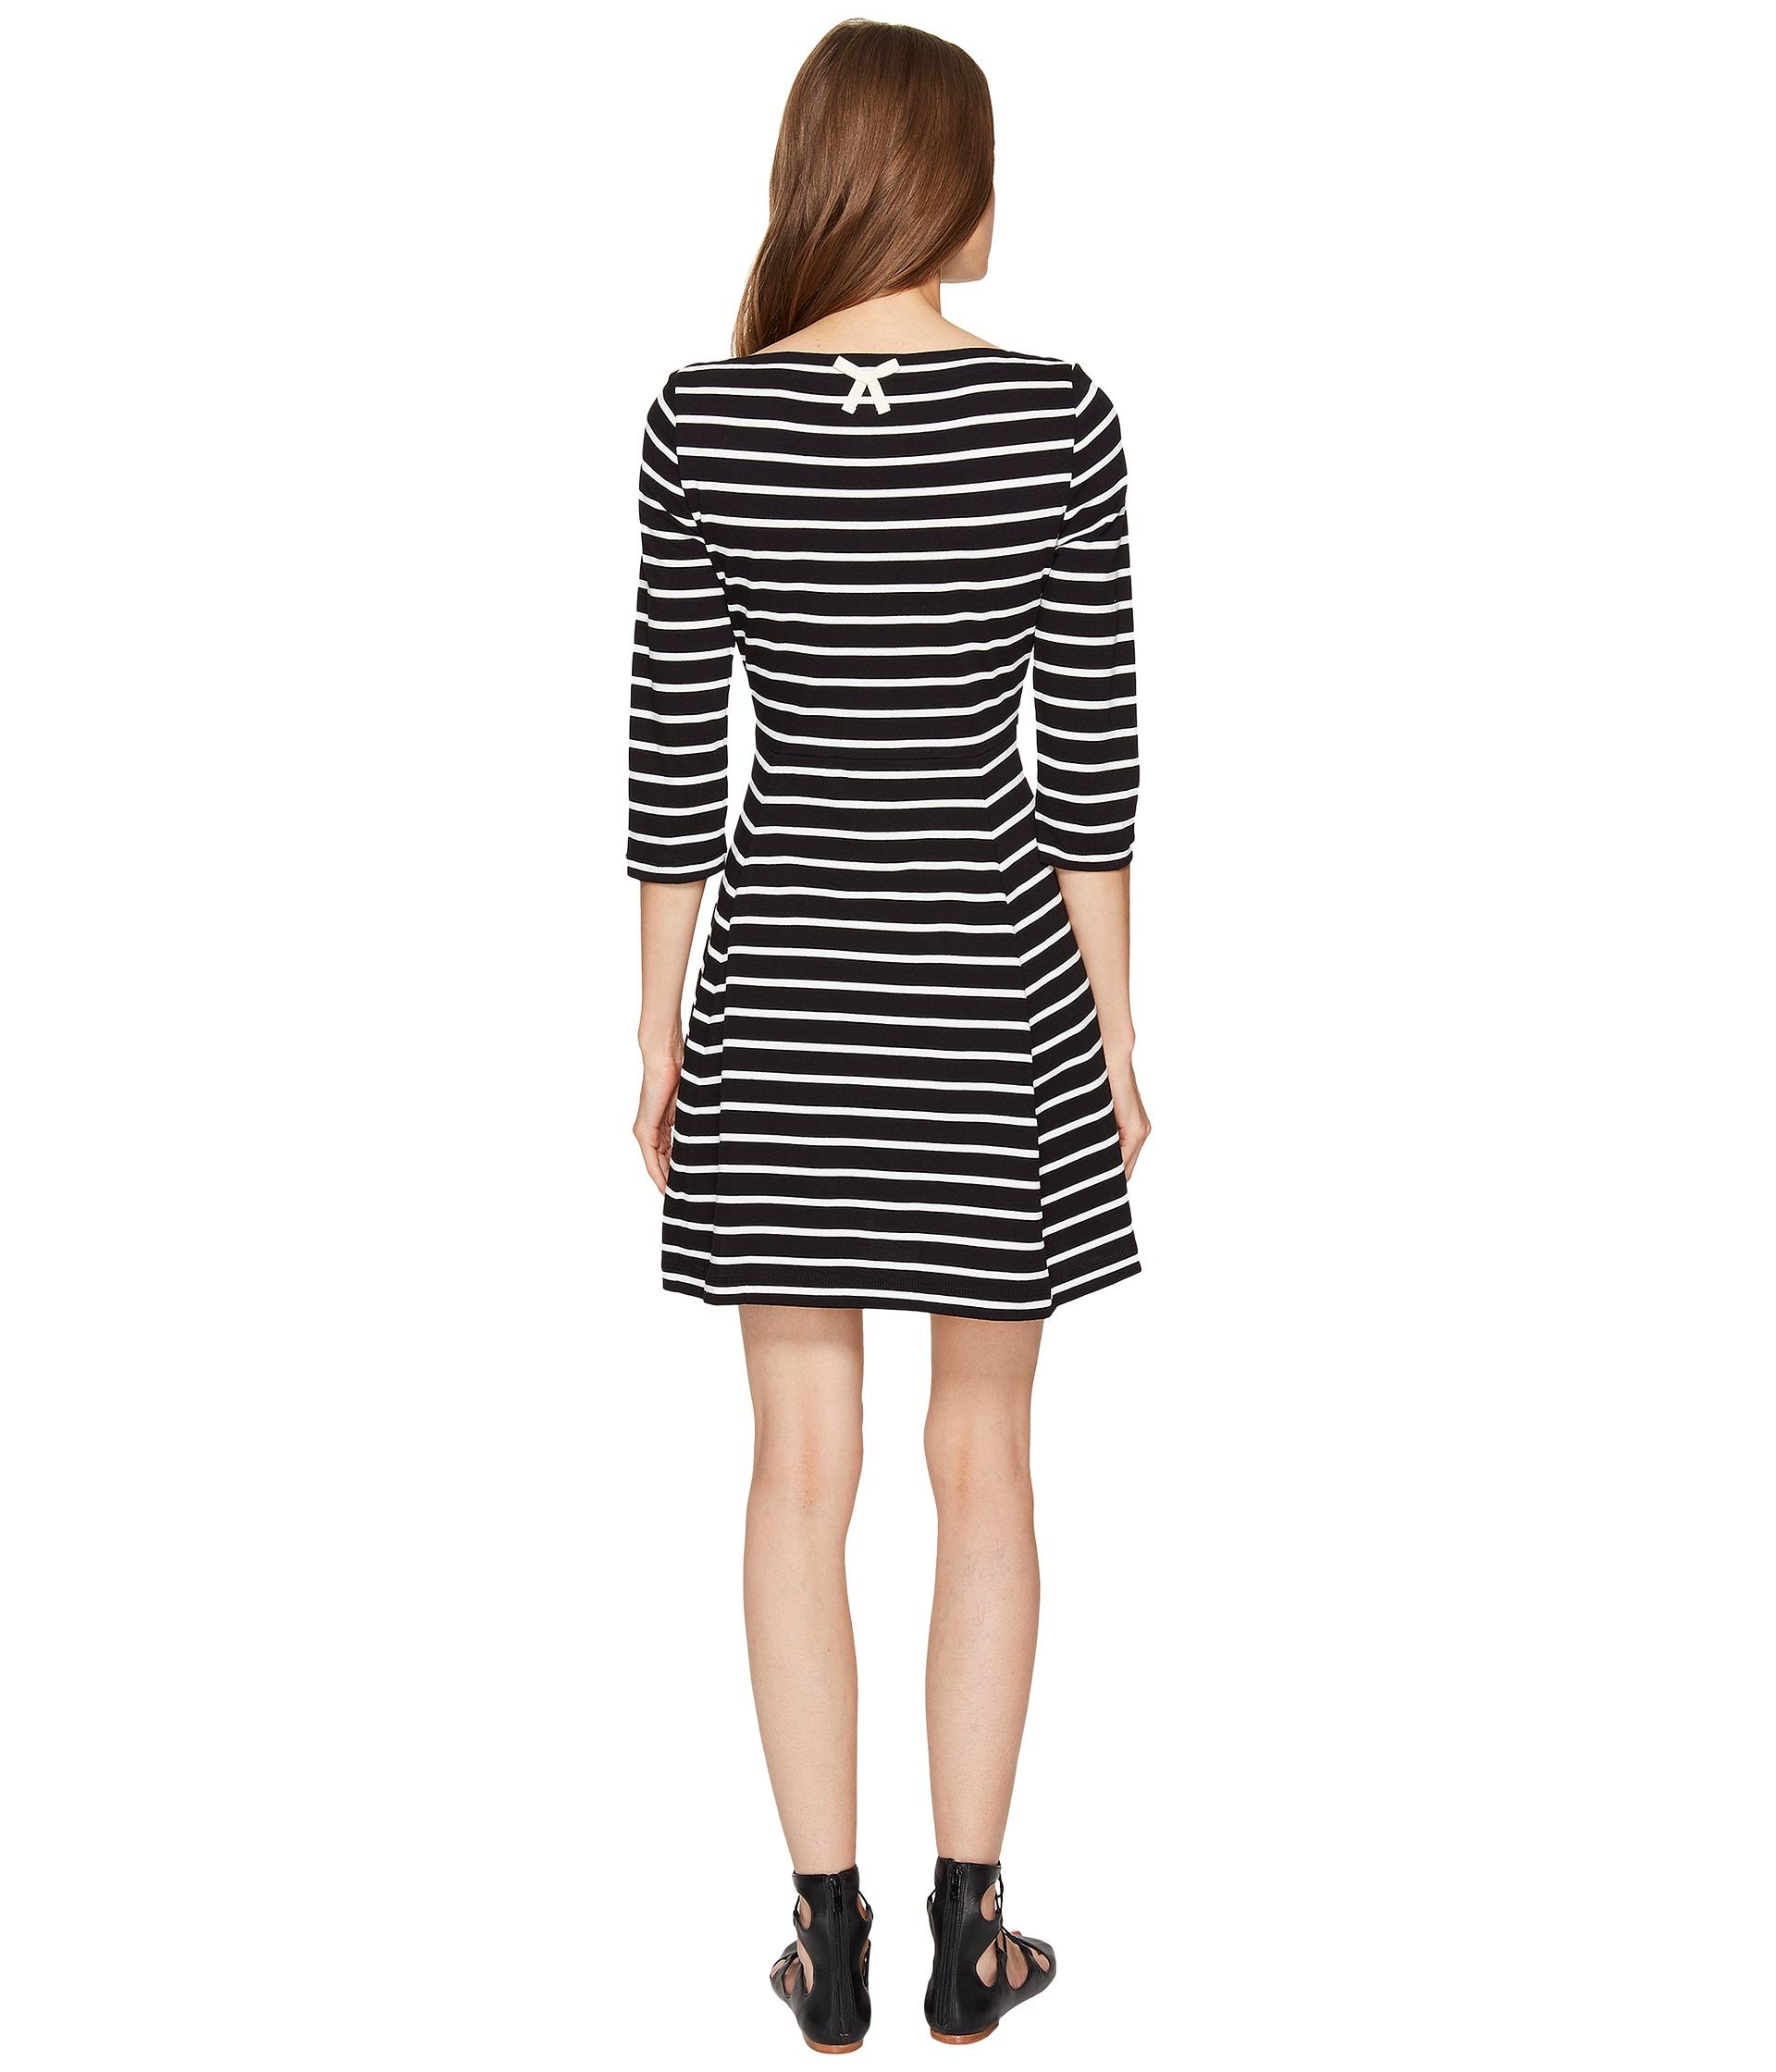 Lyst - Kate Spade Broome Street Stripe Essential Dress in Black